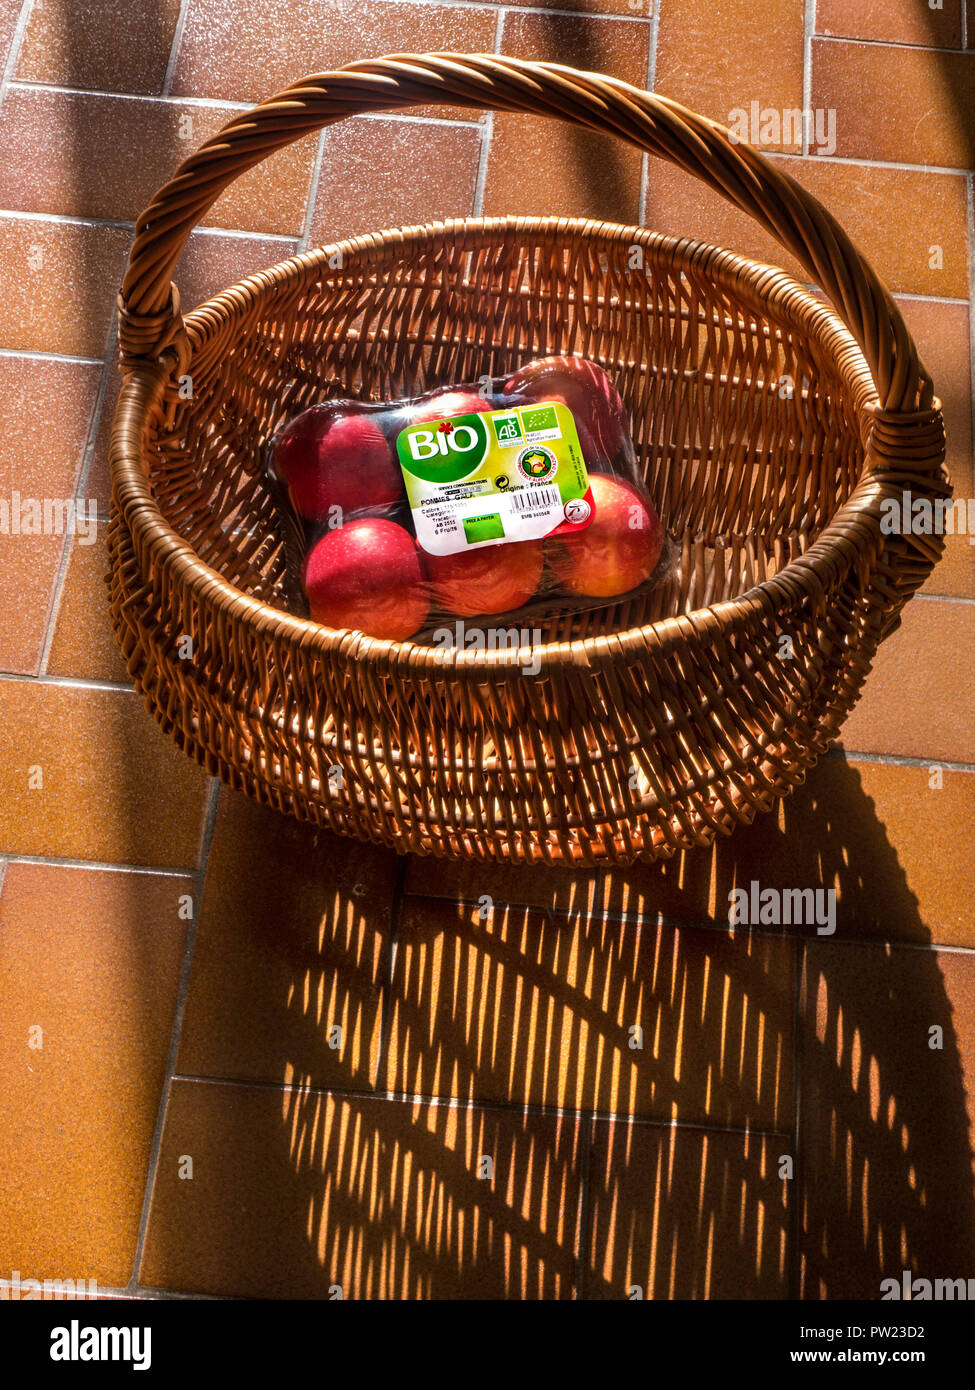 Biologisch-dynamischen Französischen Gala Äpfel im Korb Warenkorb, in der Welle des Sonnenlicht, als Konzept für ein gesundes organisches Leben Zukunft Obst Landwirtschaft Frankreich Stockfoto